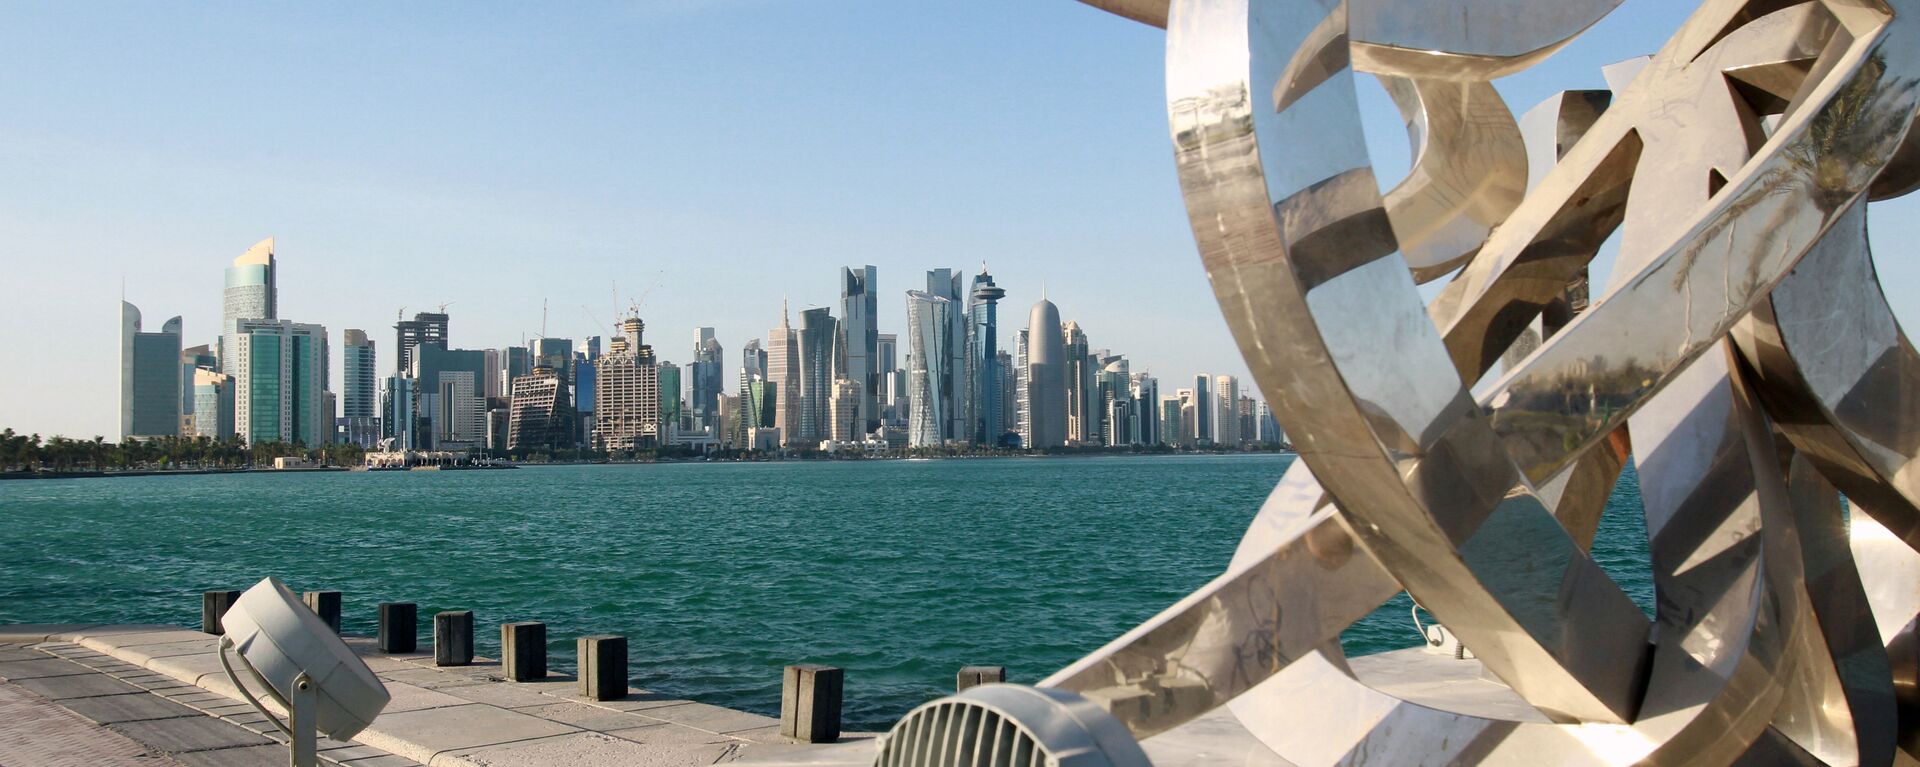 مناظر عامة للمدن العربية - الدوحة، قطر 5 يونيو 2017 - سبوتنيك عربي, 1920, 06.03.2021